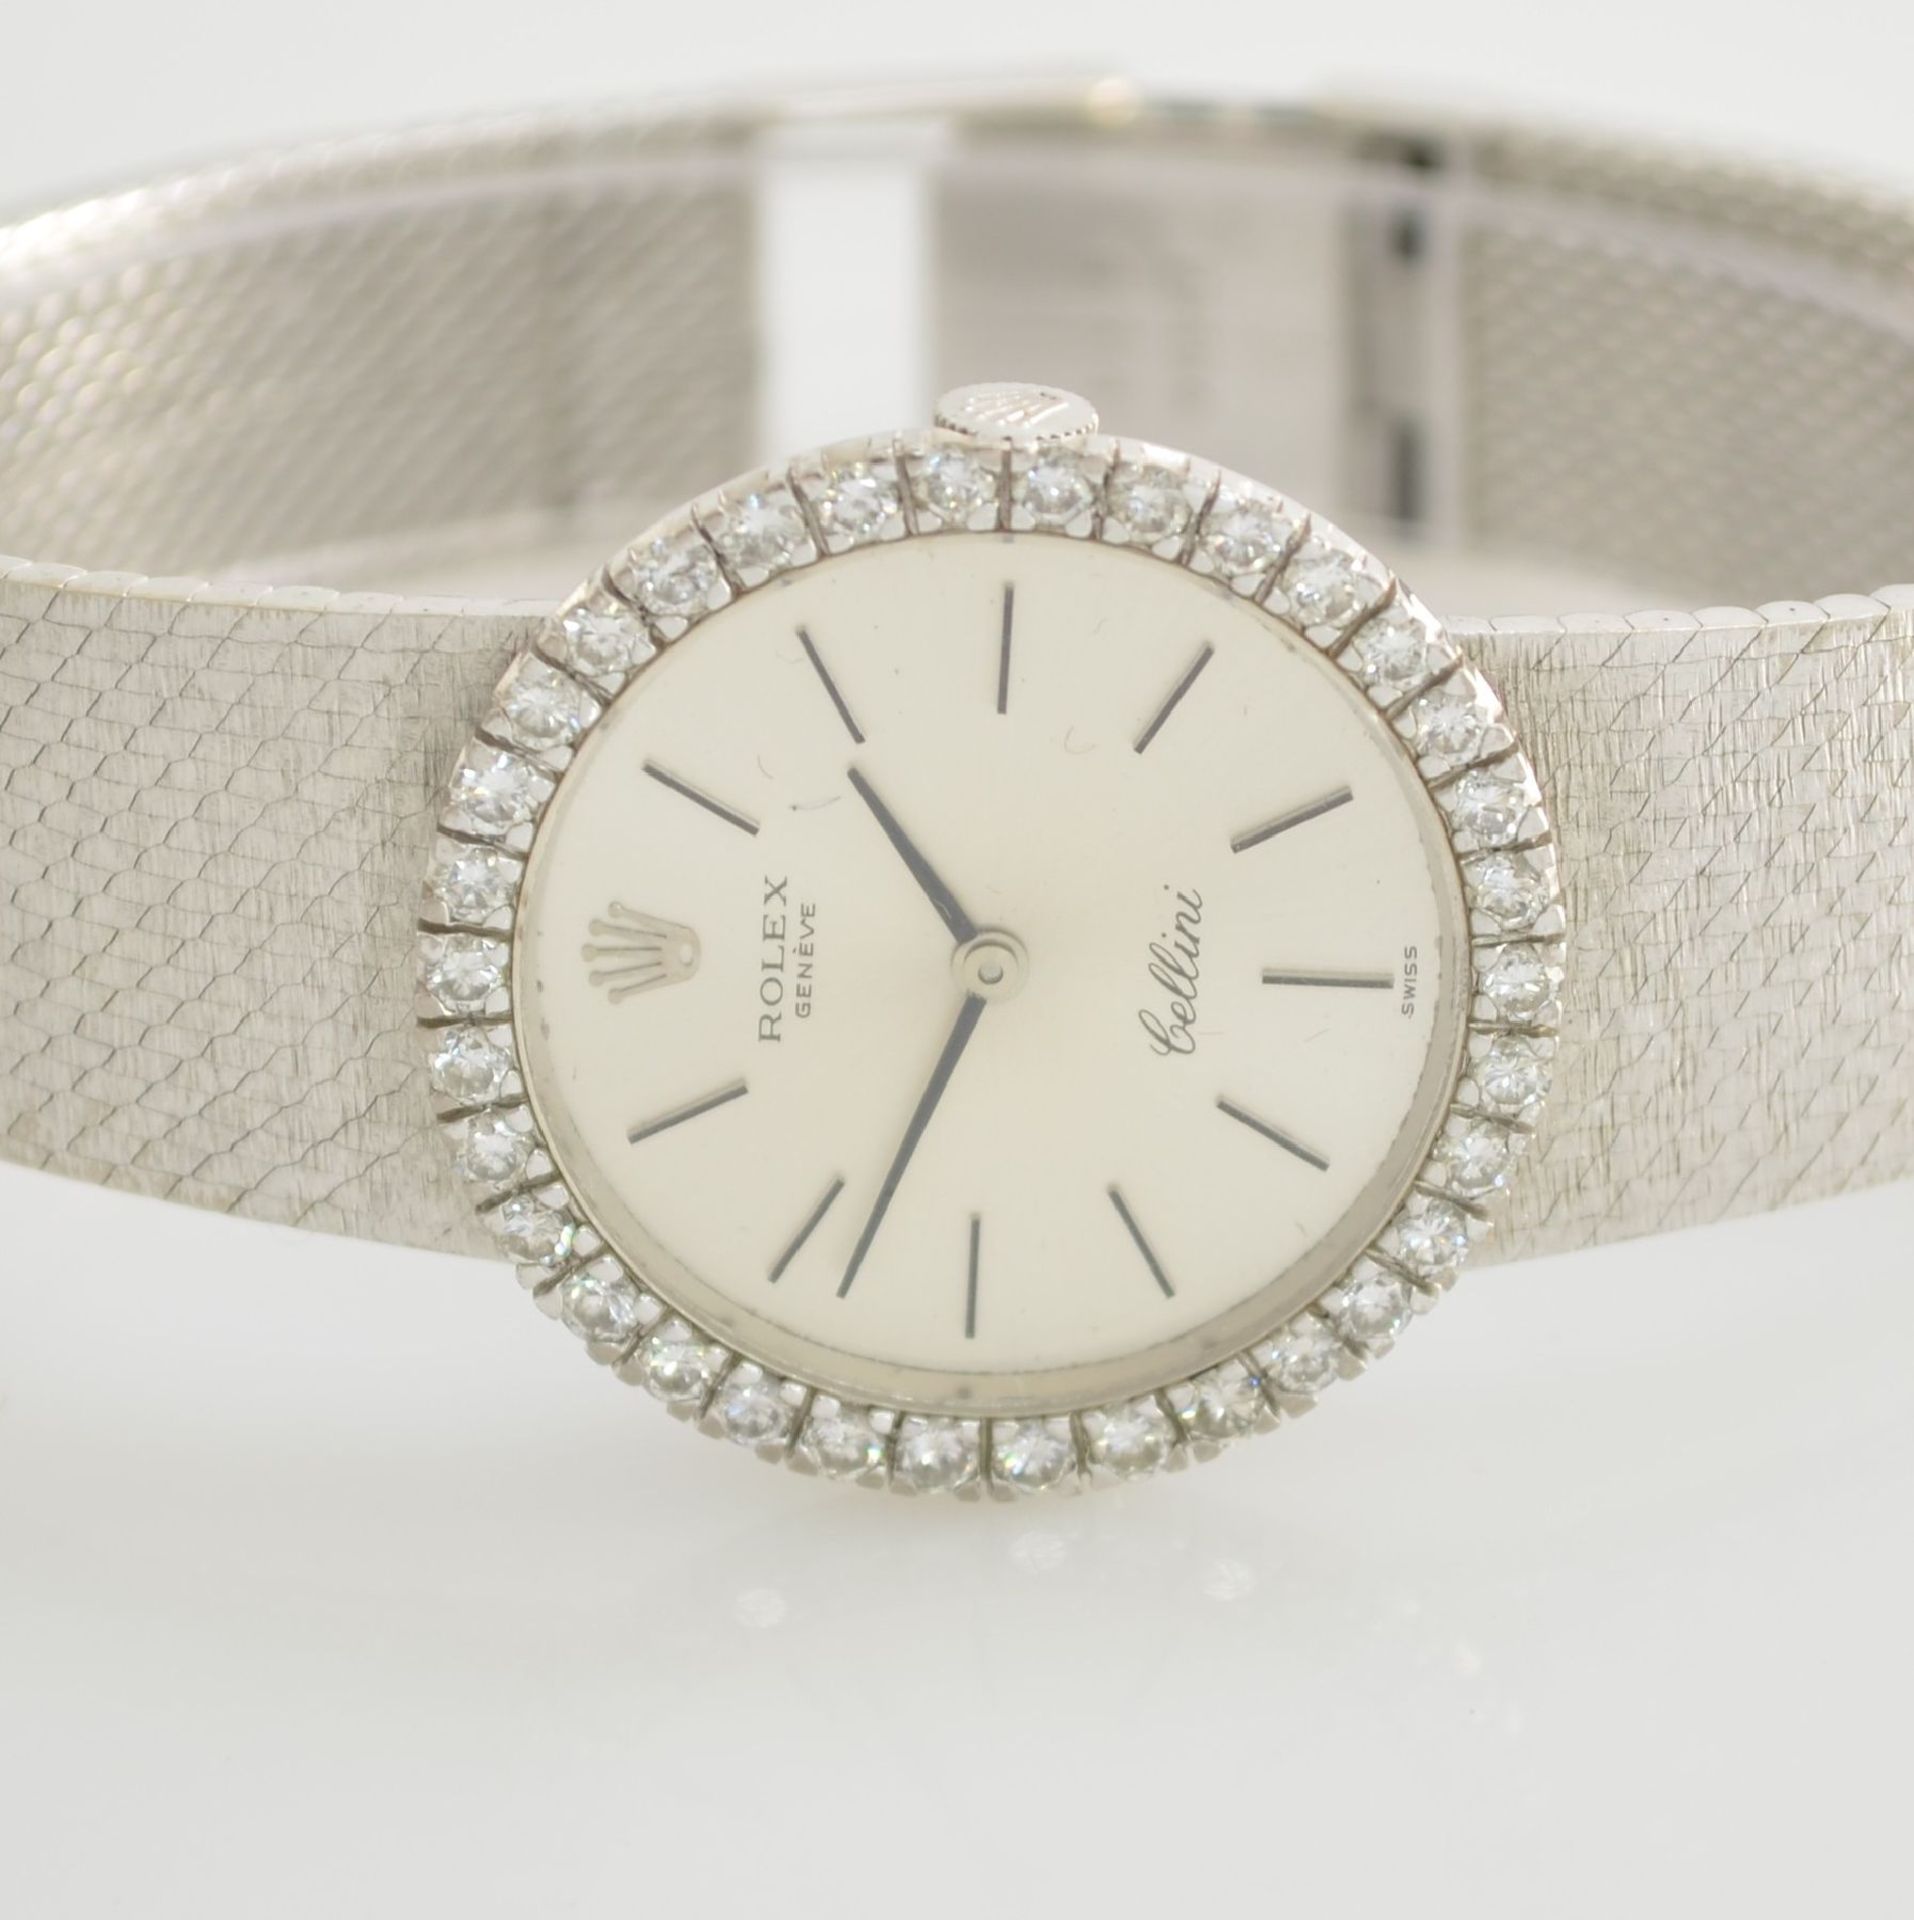 ROLEX Cellini 18k white gold, diamond set ladies wristwatch, Switzerland around 1970, manual - Bild 2 aus 5